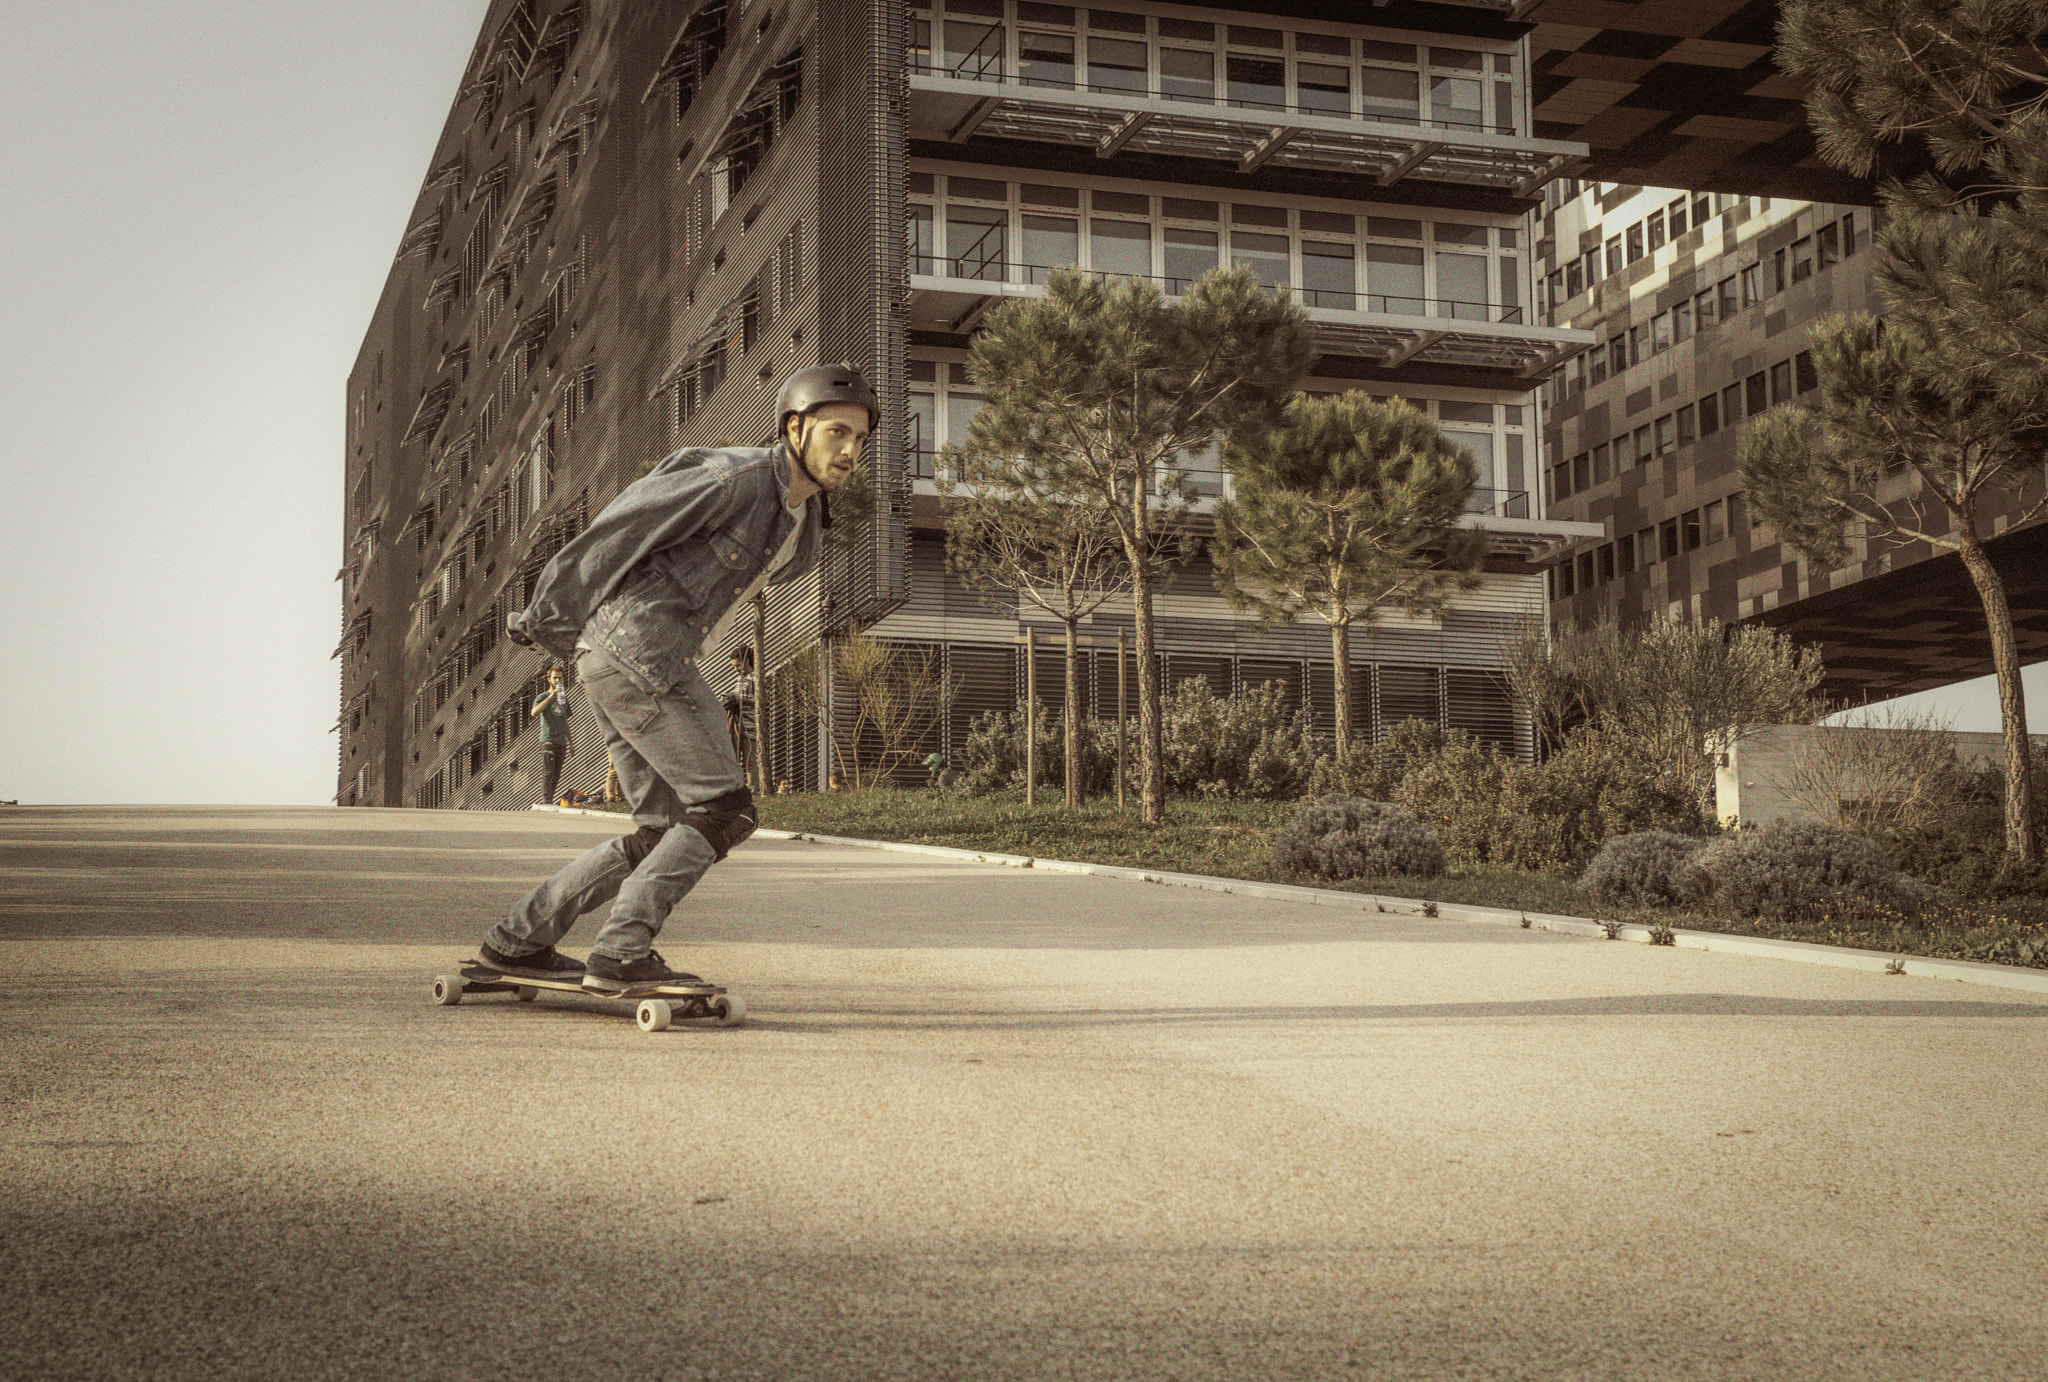 Nikon D610 sample photo. Skate urbain photography